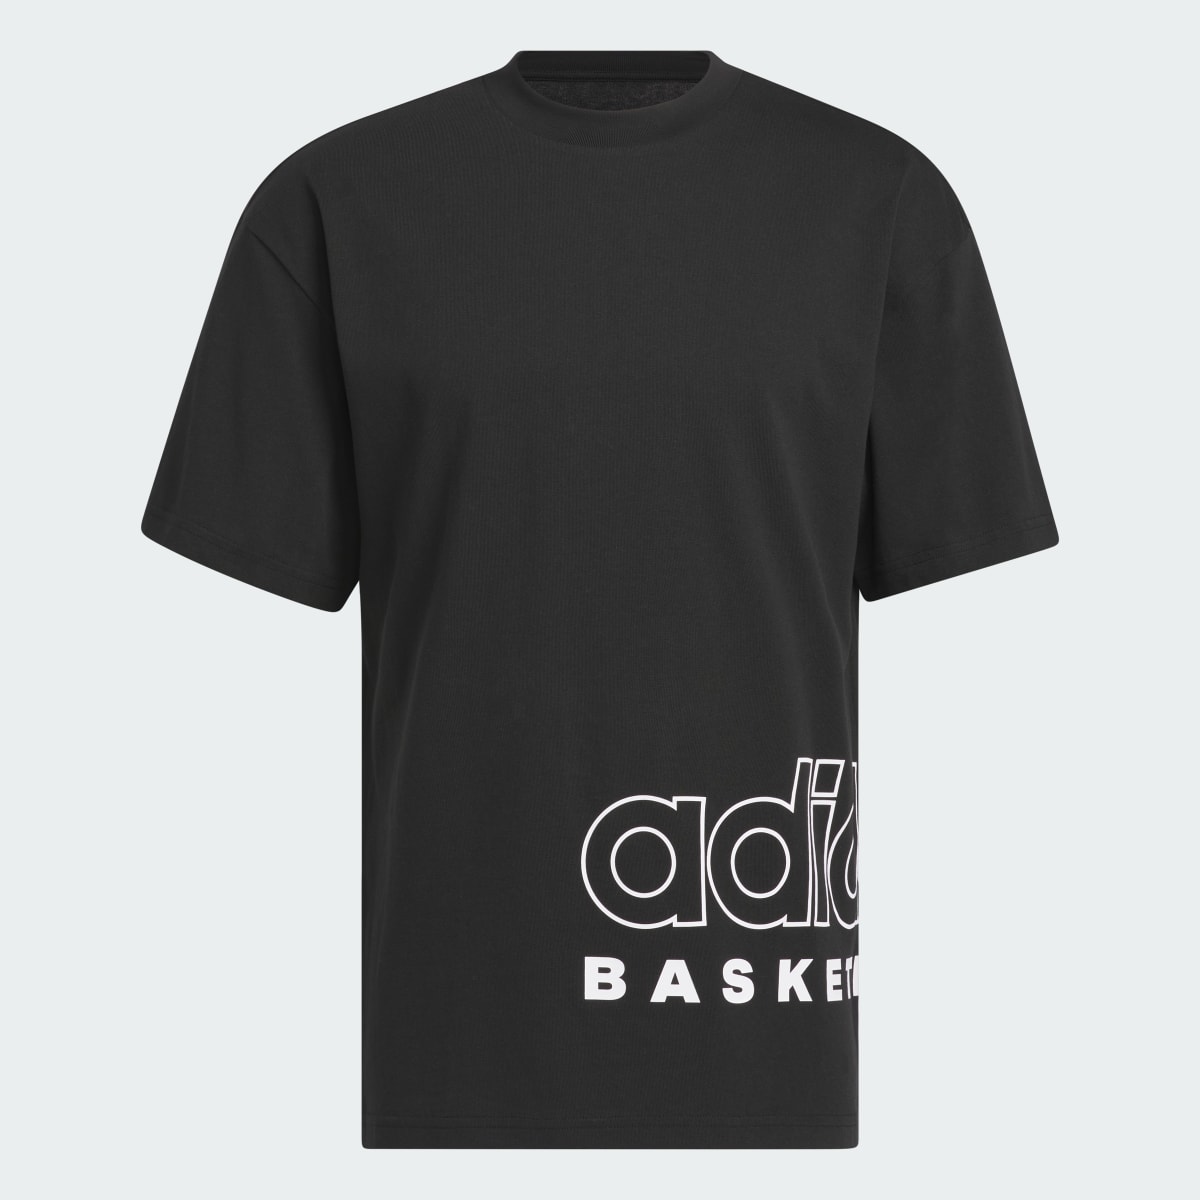 Adidas T-shirt Select adidas Basketball. 5